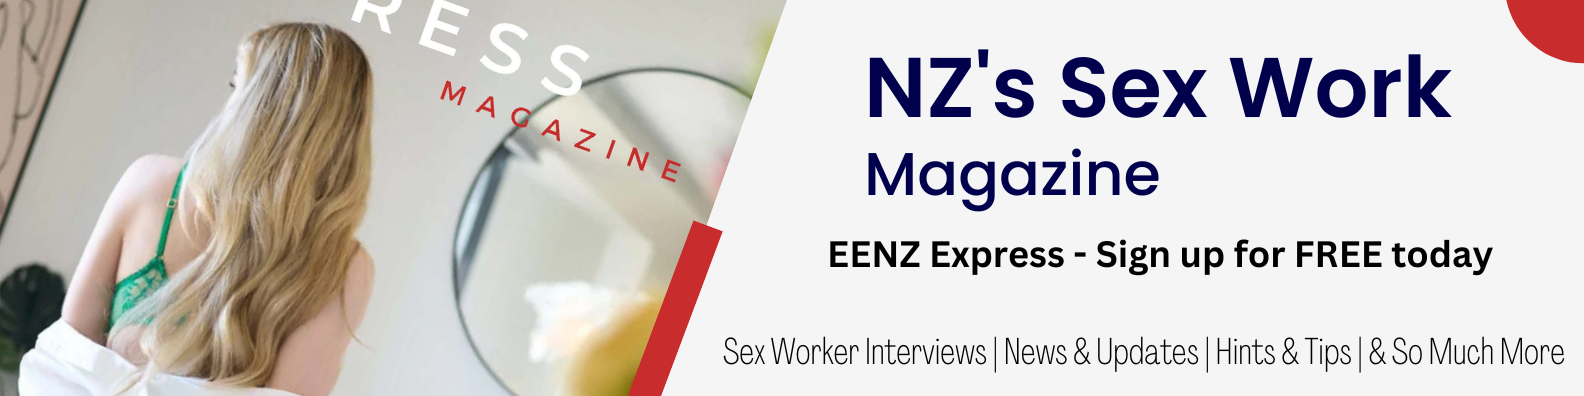 EENZ Express Sex Work Magazine Subscription Banner